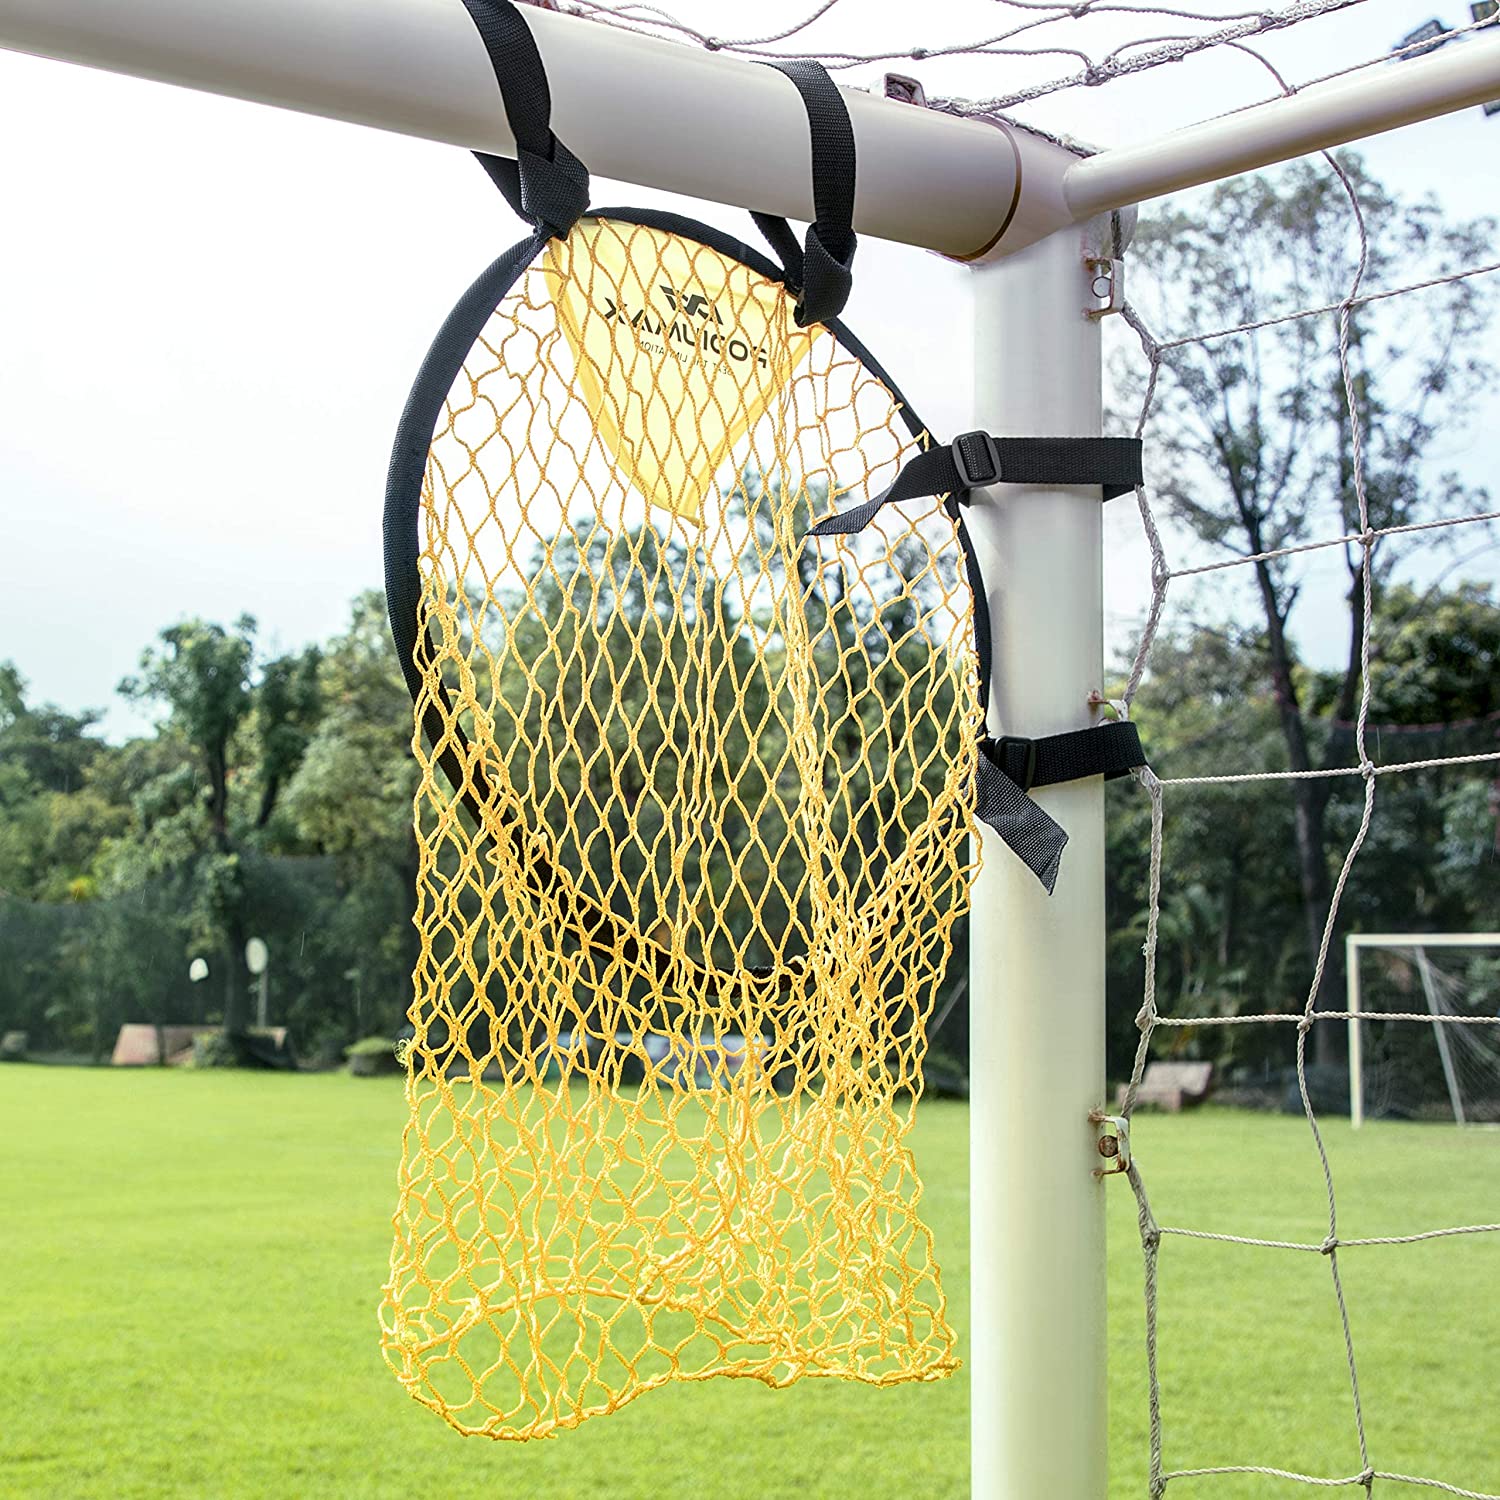 Обучение по футболу нацеливается на футбольные стрельбу целевое оборудование. Свободный удар по тренировке стрельбы с сетью Topshot Topbins Team Sports